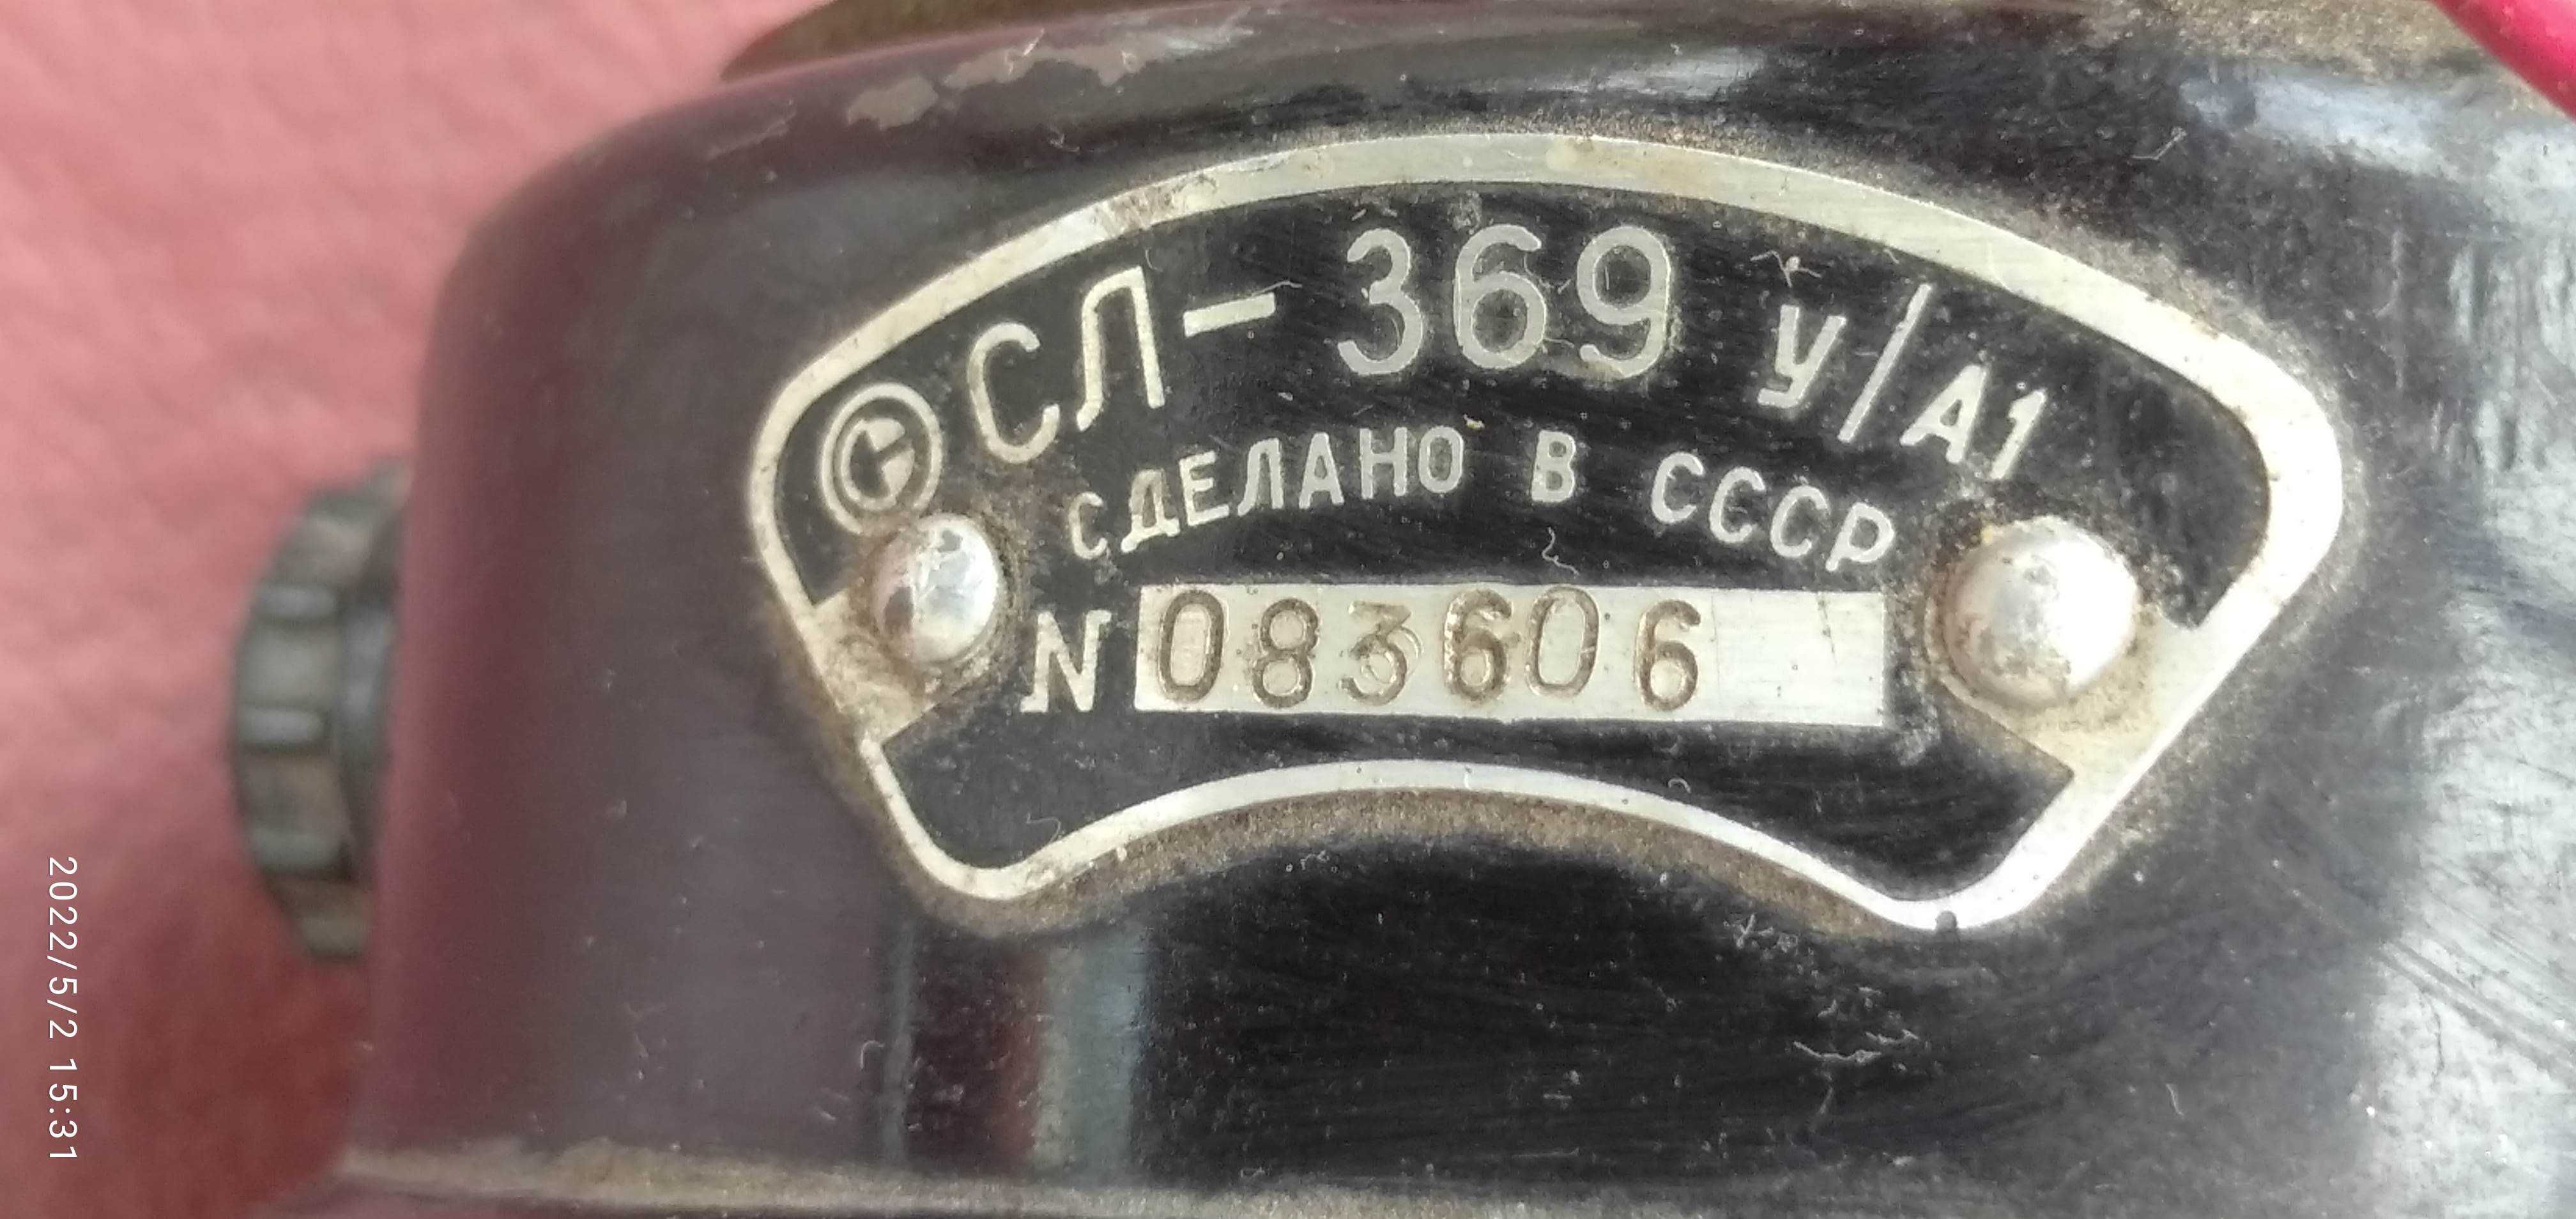 Эл. моторы  Г-31АУ4, СЛ-369 У/А1, , ДК - 1А